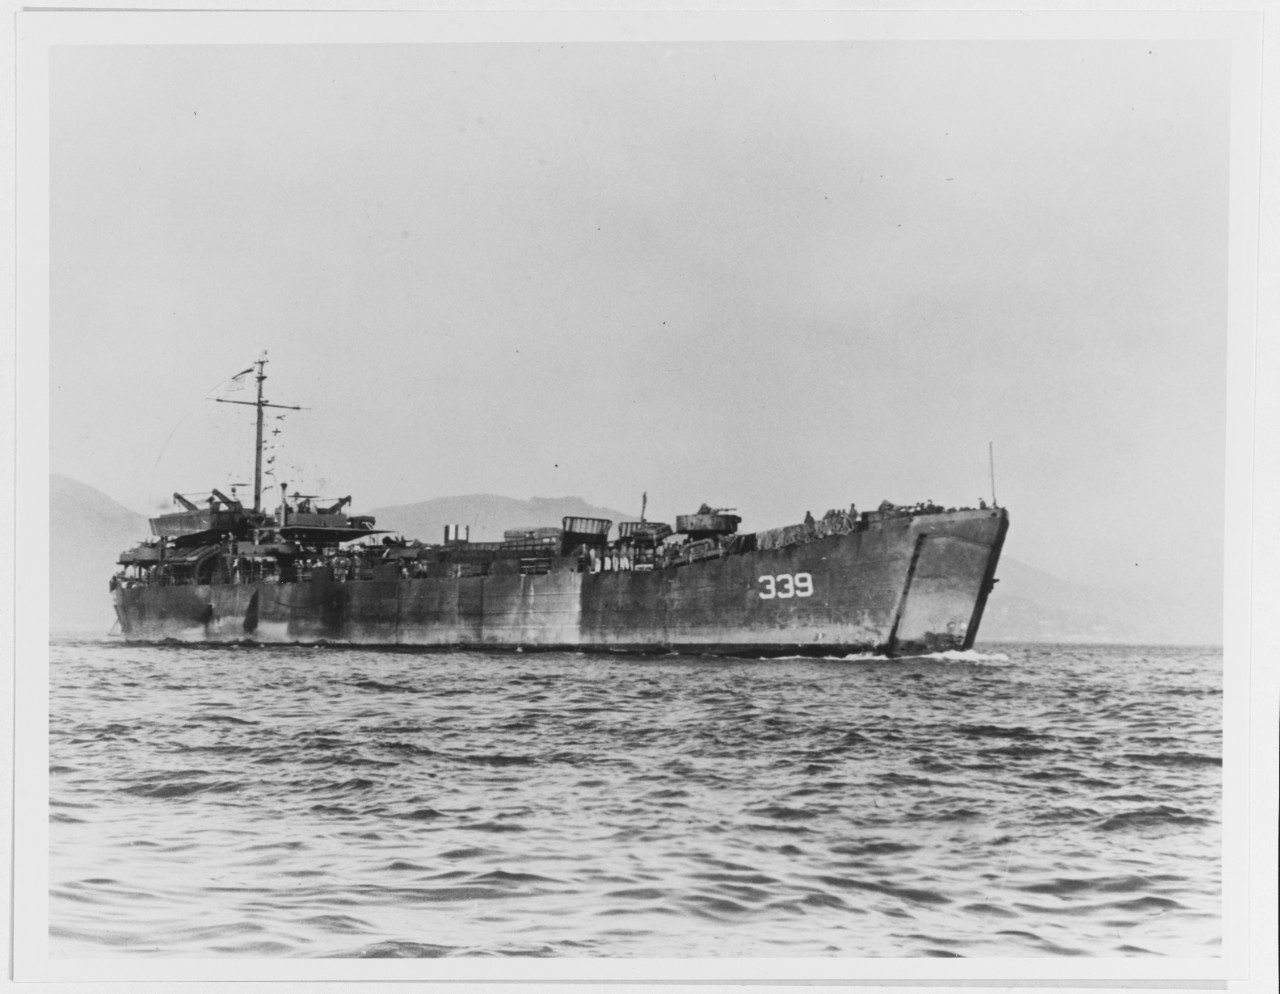 USS LST-339